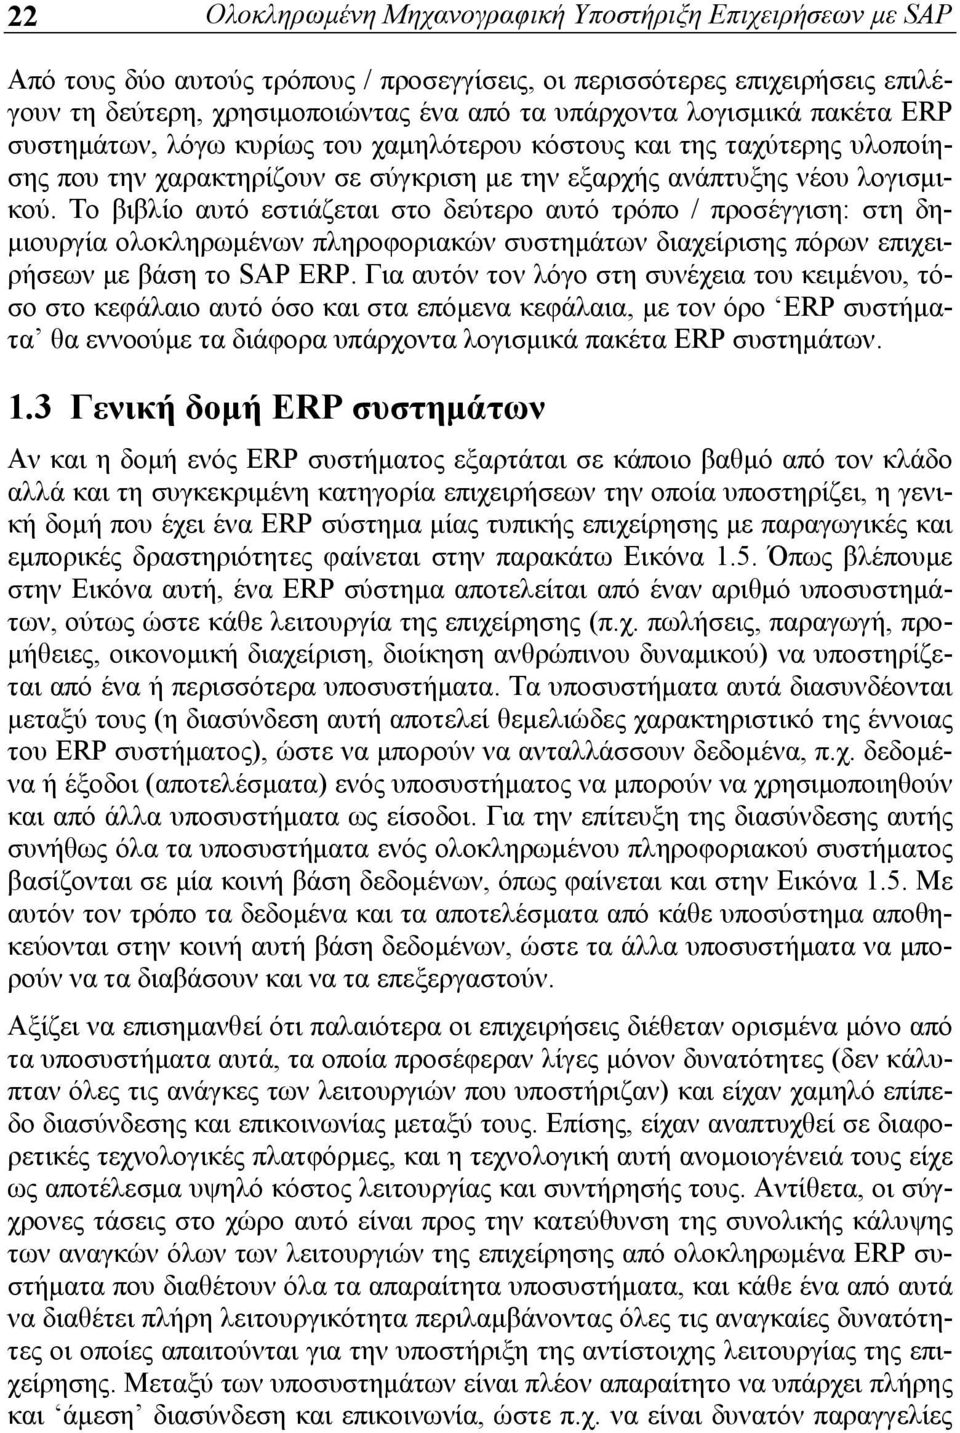 Το βιβλίο αυτό εστιάζεται στο δεύτερο αυτό τρόπο / προσέγγιση: στη δημιουργία ολοκληρωμένων πληροφοριακών συστημάτων διαχείρισης πόρων επιχειρήσεων με βάση το SAP ERP.